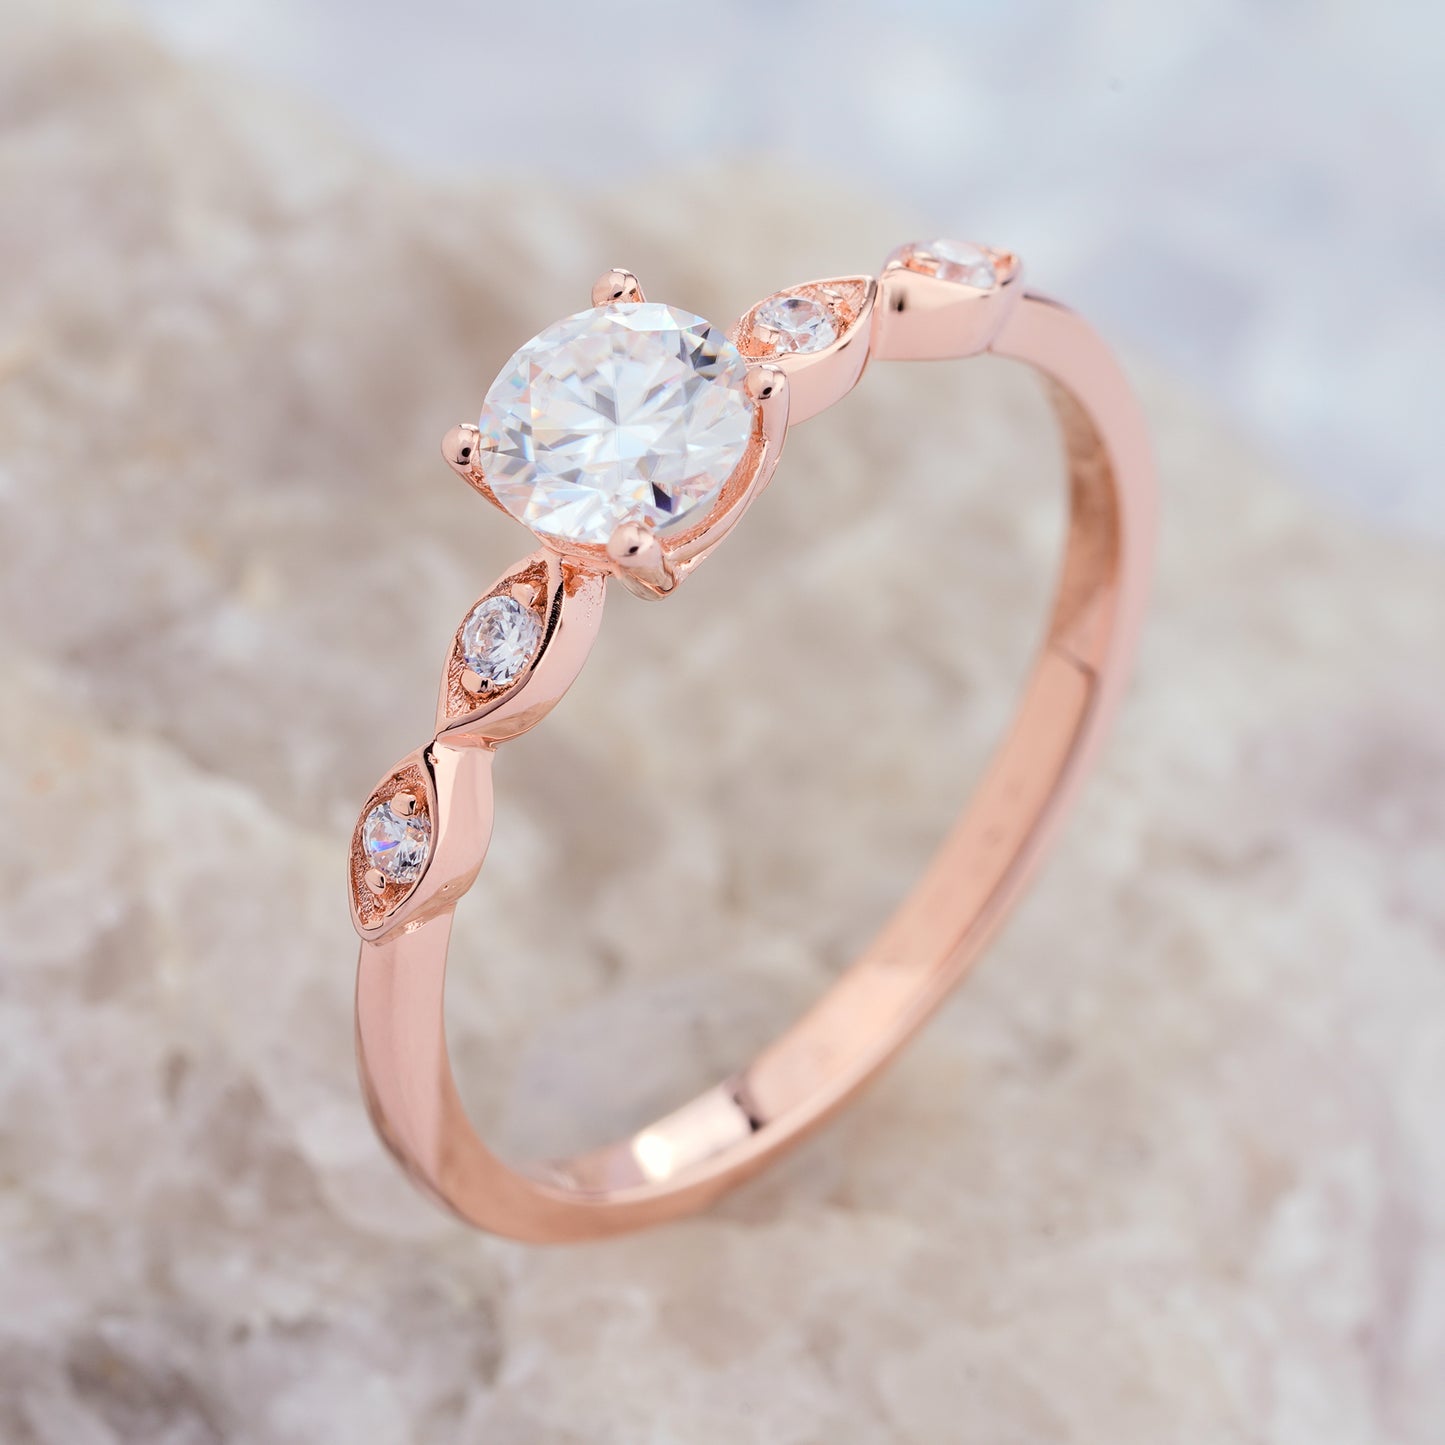 Moissanite Engagement Rings Diamond Dainty Wedding Ring in14K/18K Gold - ShainJewelry